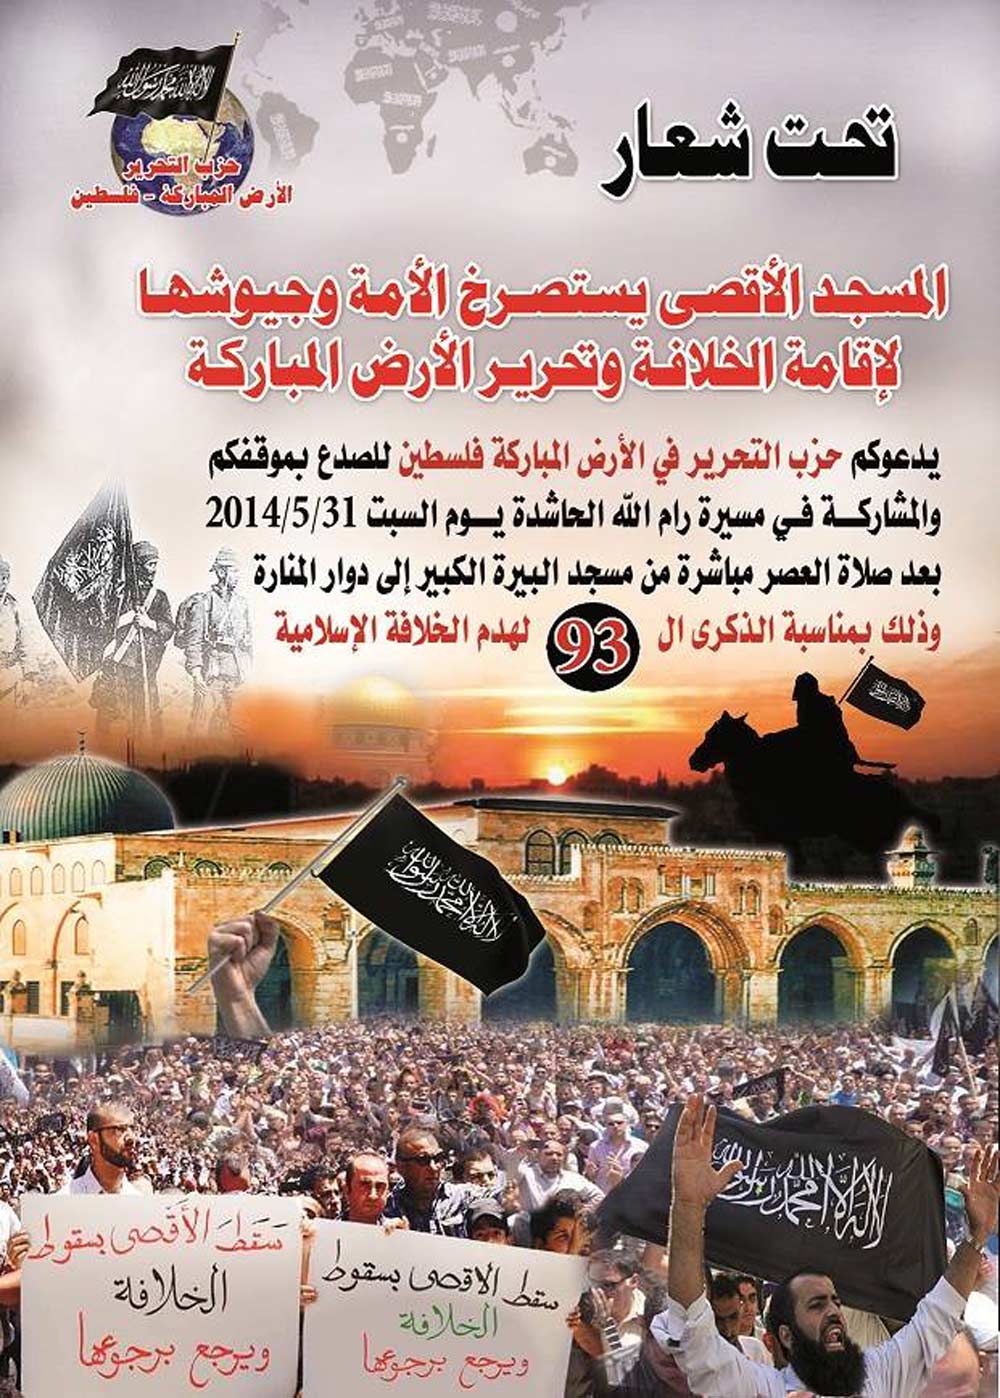 دعوة لحضور مسيرة رام الله الحاشدة